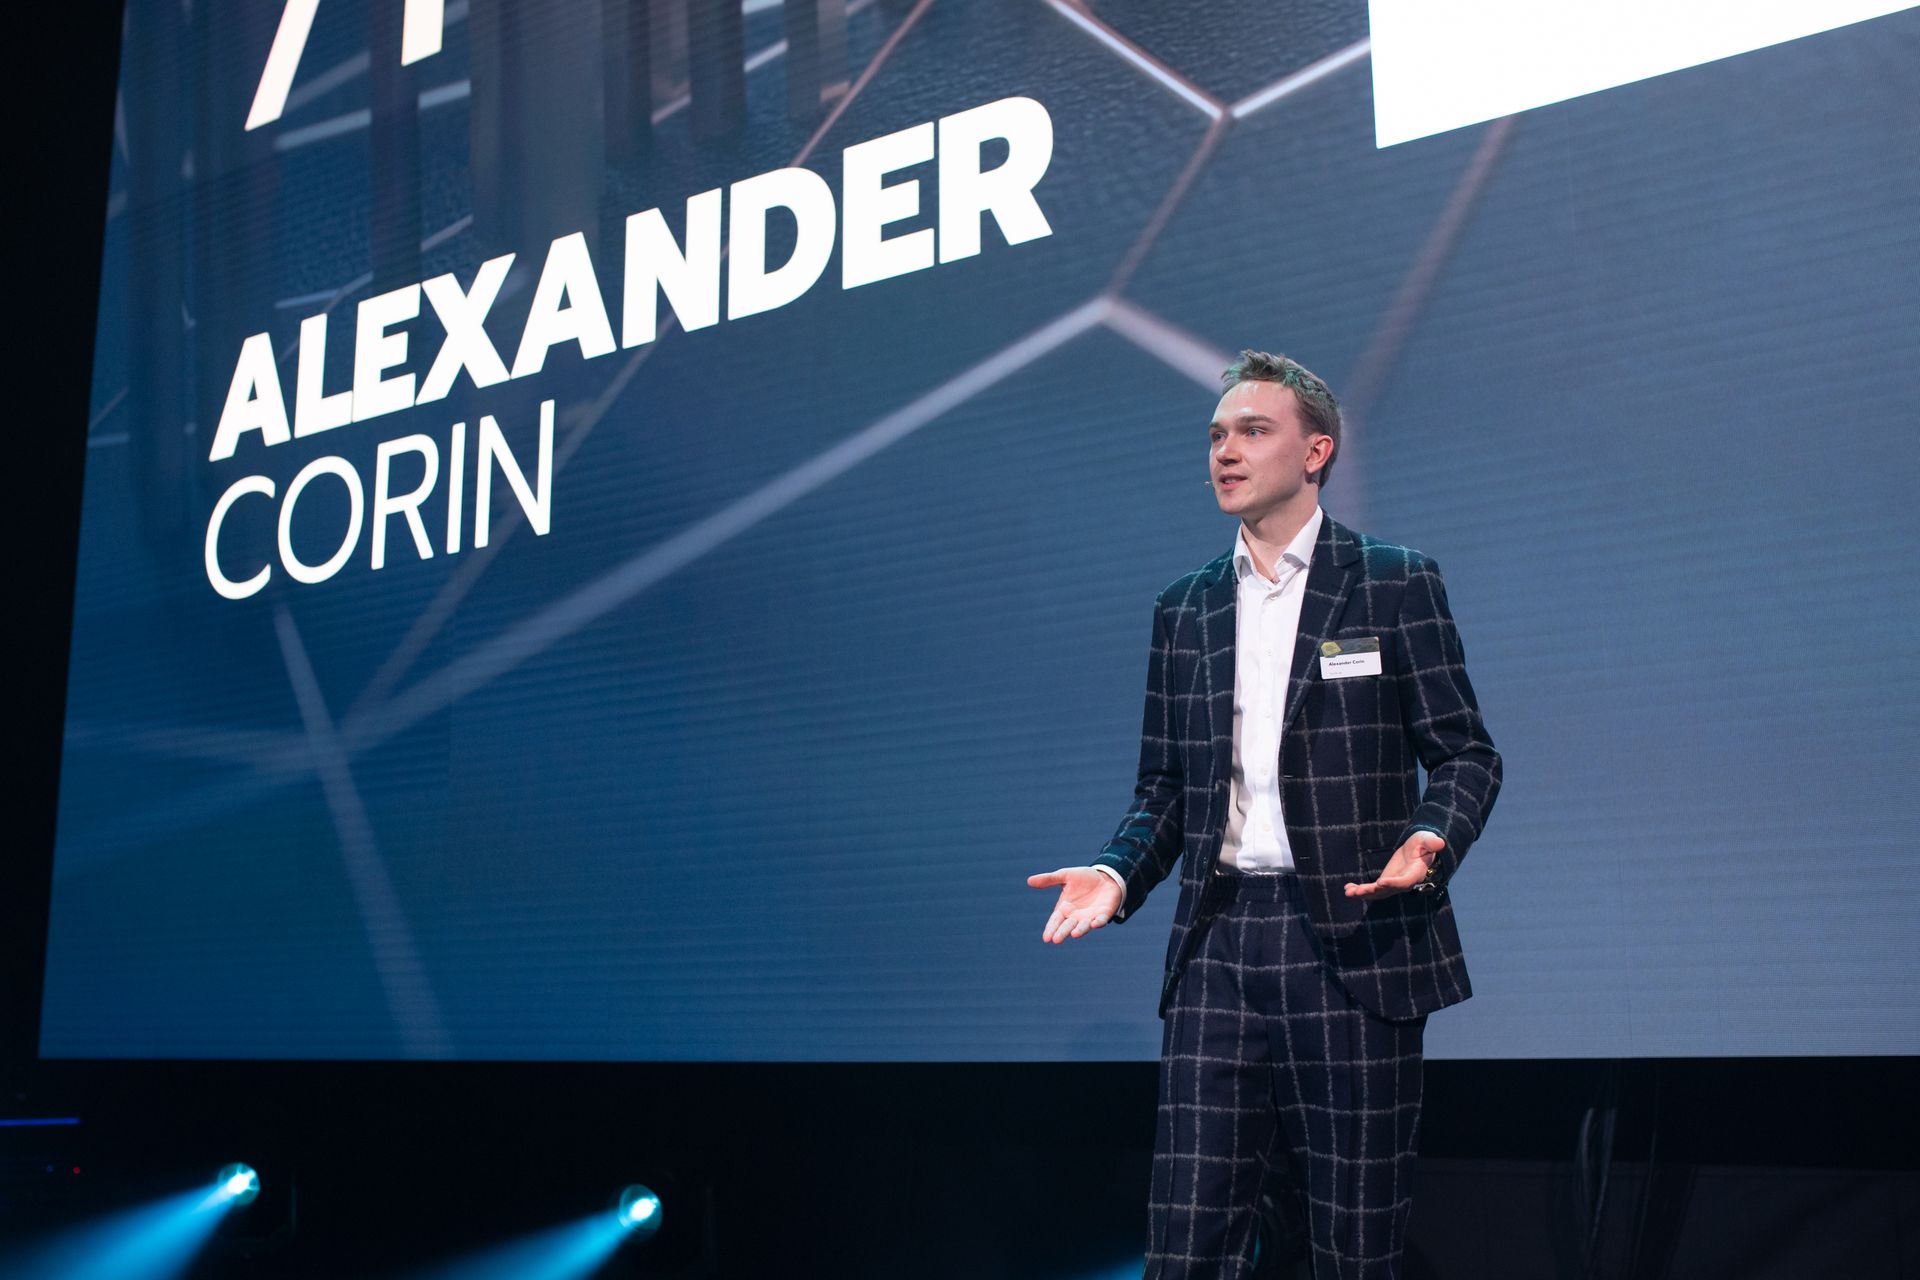 Alexander Corin, ganador de la clasificación "Nextgen Hero", en la ceremonia de entrega del "Digital Economy Award" de Suiza